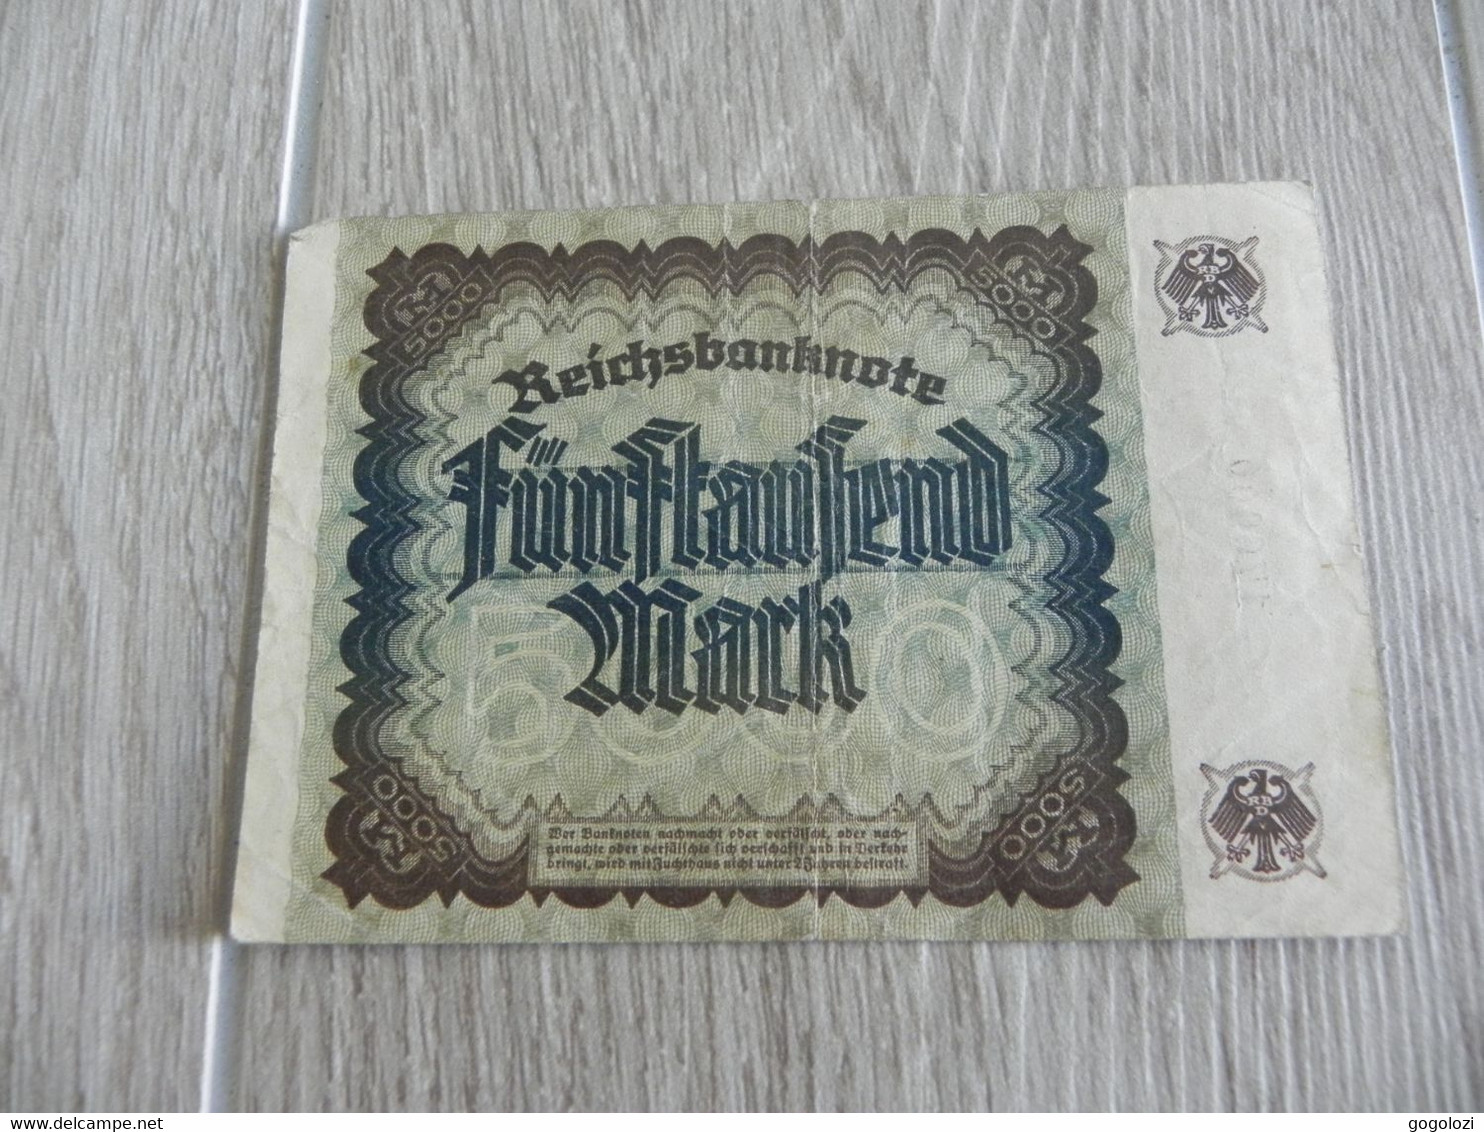 Deutschland Germany 5000 Mark 1922 - 5.000 Mark